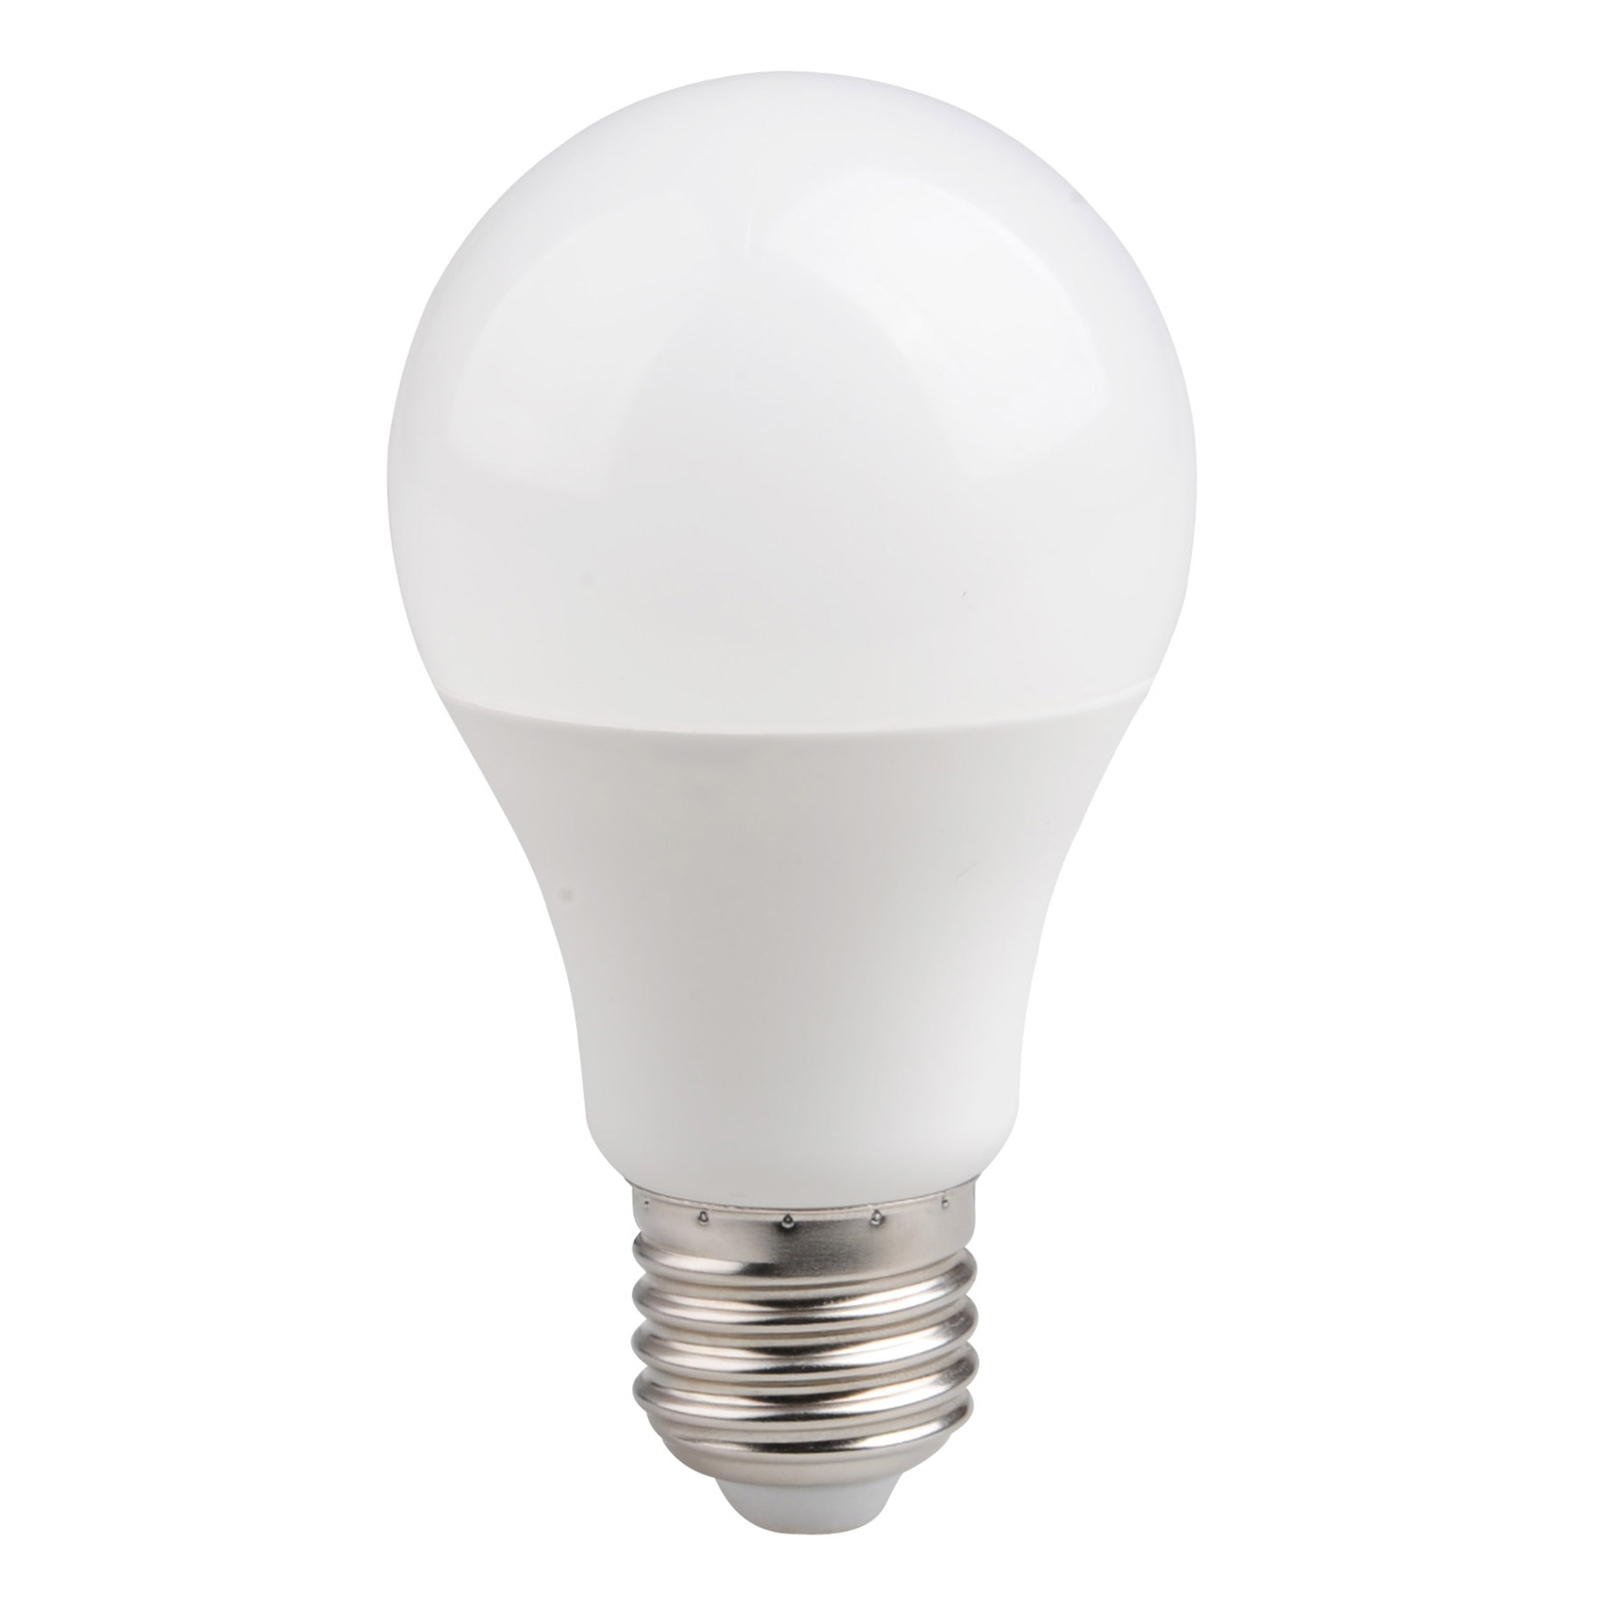 LED-Lampe E27 5,5W Tuya-App, RGBW, WiFi, dimmbar